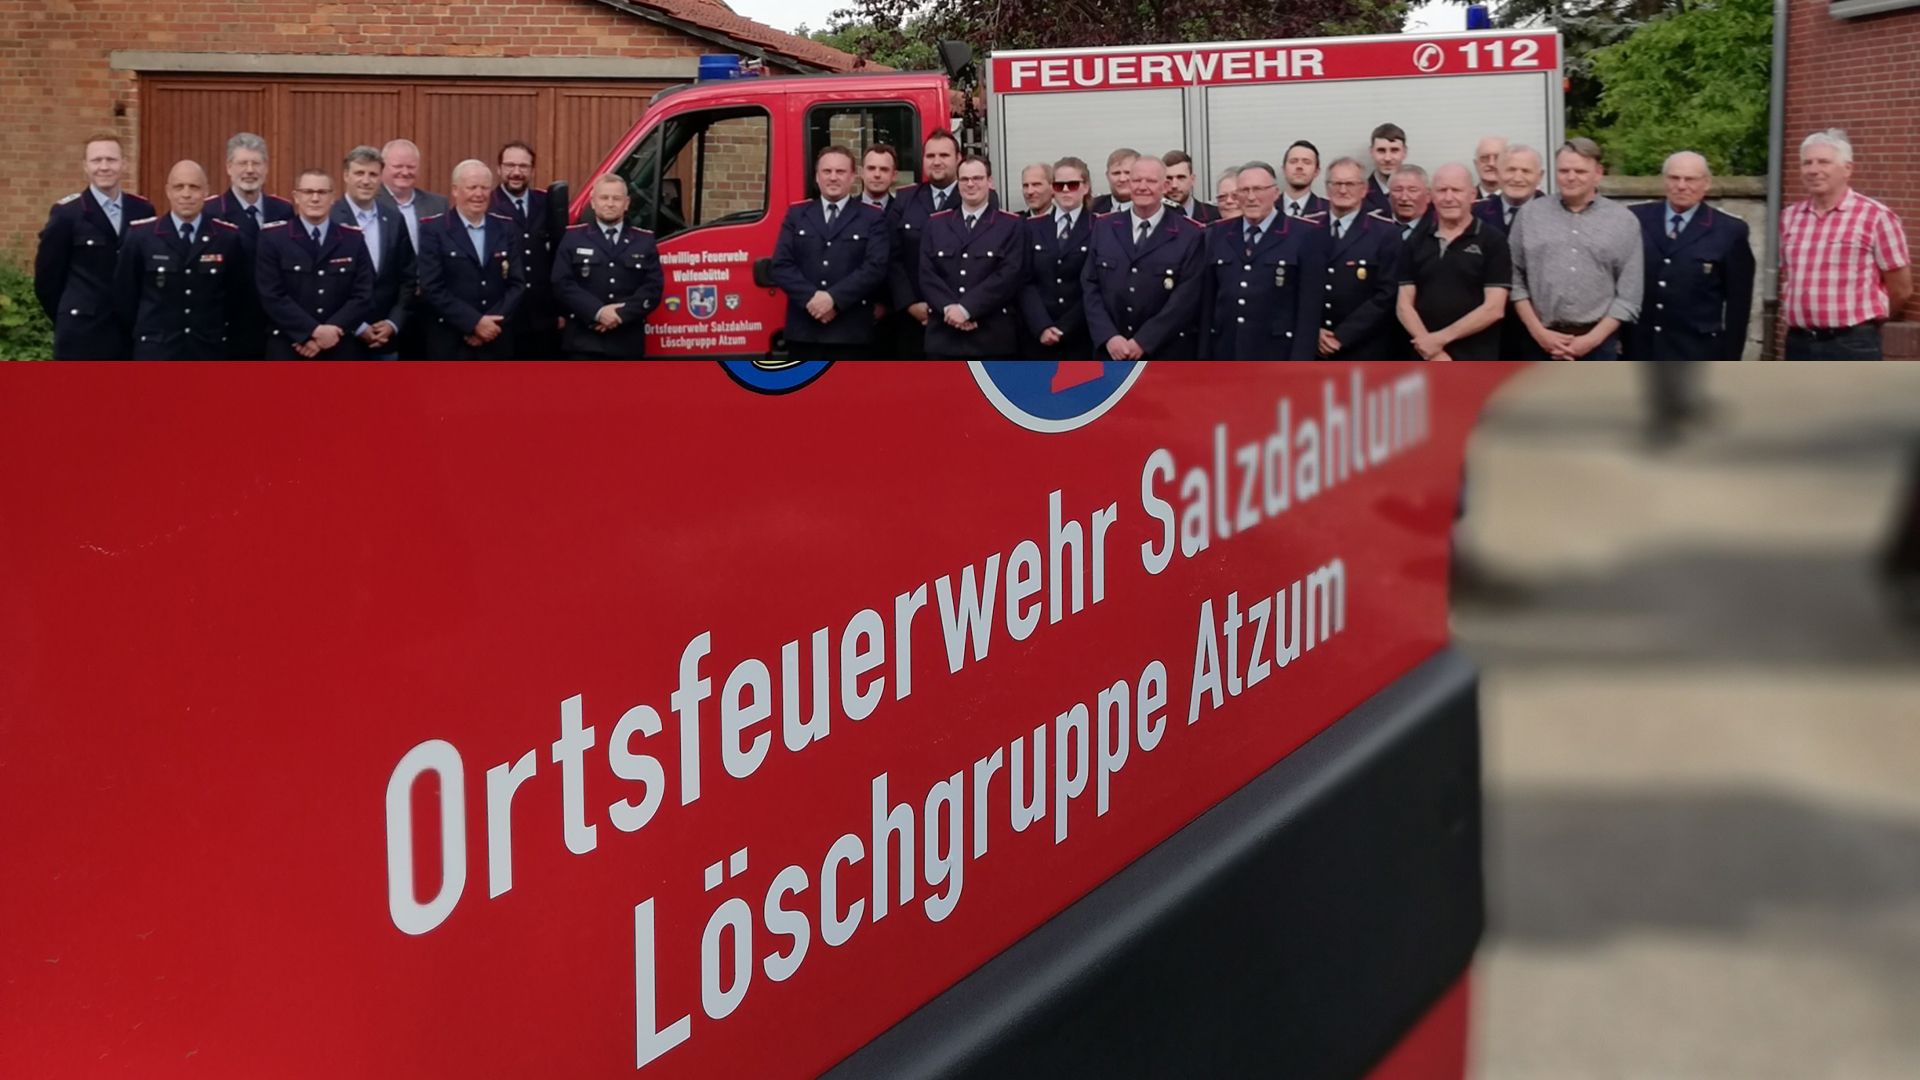 Die Ortsfeuerwehr Atzum ist formell aufgelöst und als Löschgruppe bei der Ortsfeuerwehr Salzdahlum eingegliedert.